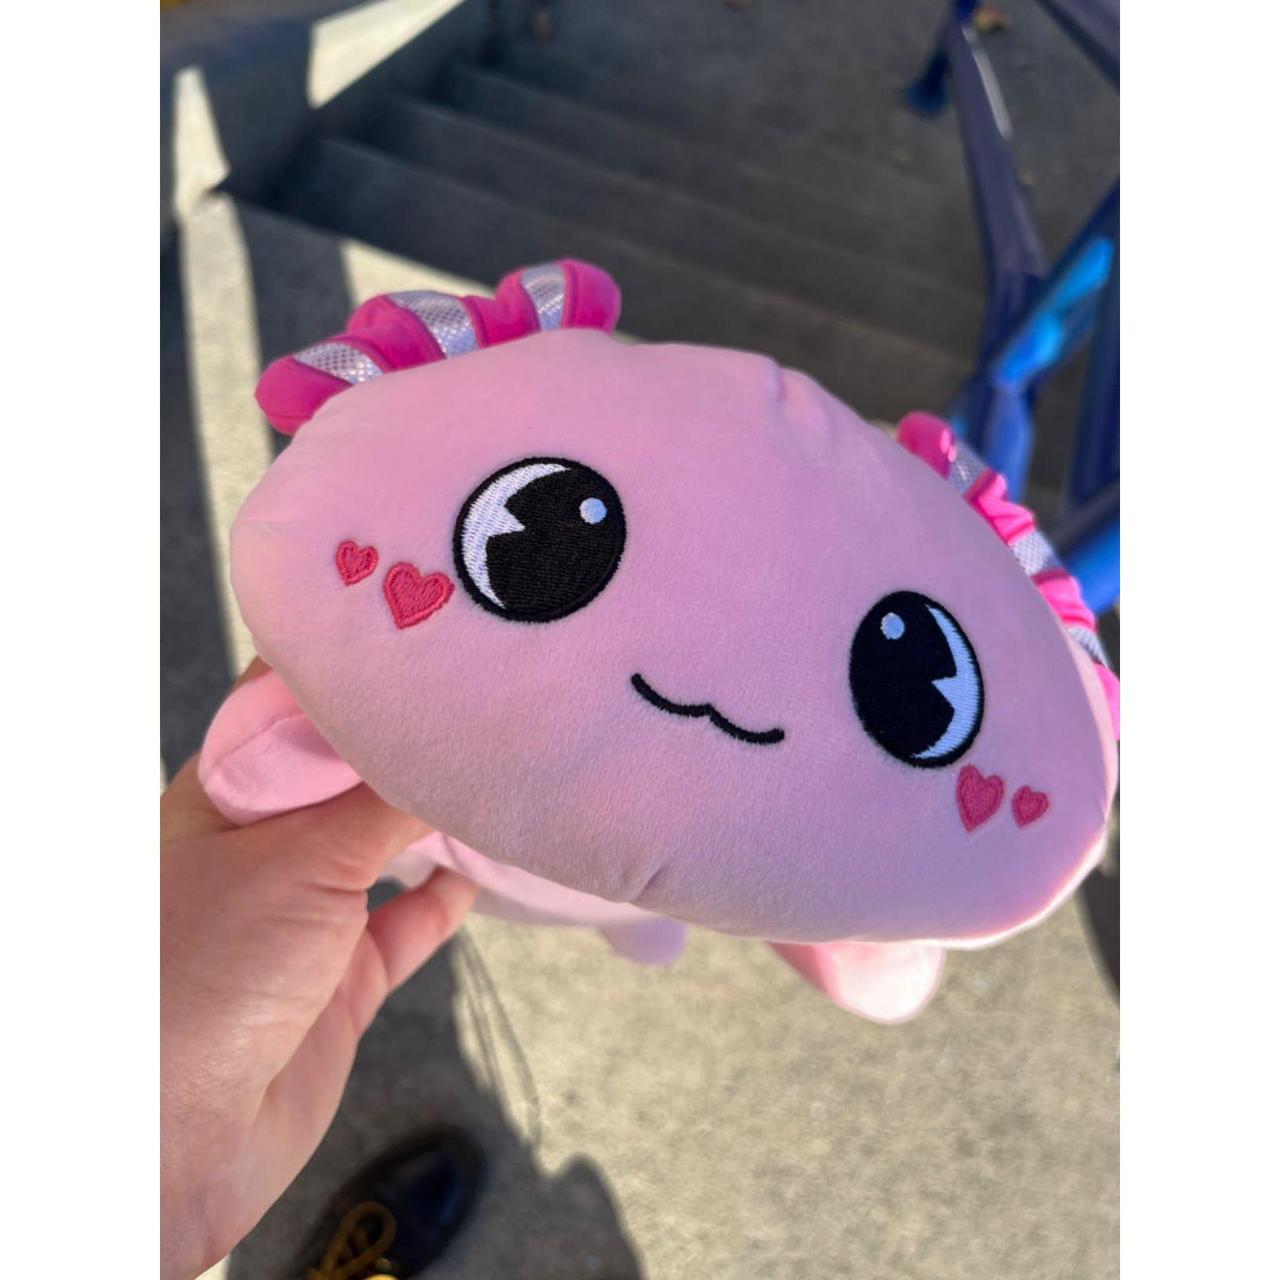 Officygnet Axolotl Plush, 13 Soft Stuffed Animal Plush Toy, Cute Axolotl  Plush Pillow, Kawaii Plushies Dolls for Kids, Pink Axolotl Gift for Girls